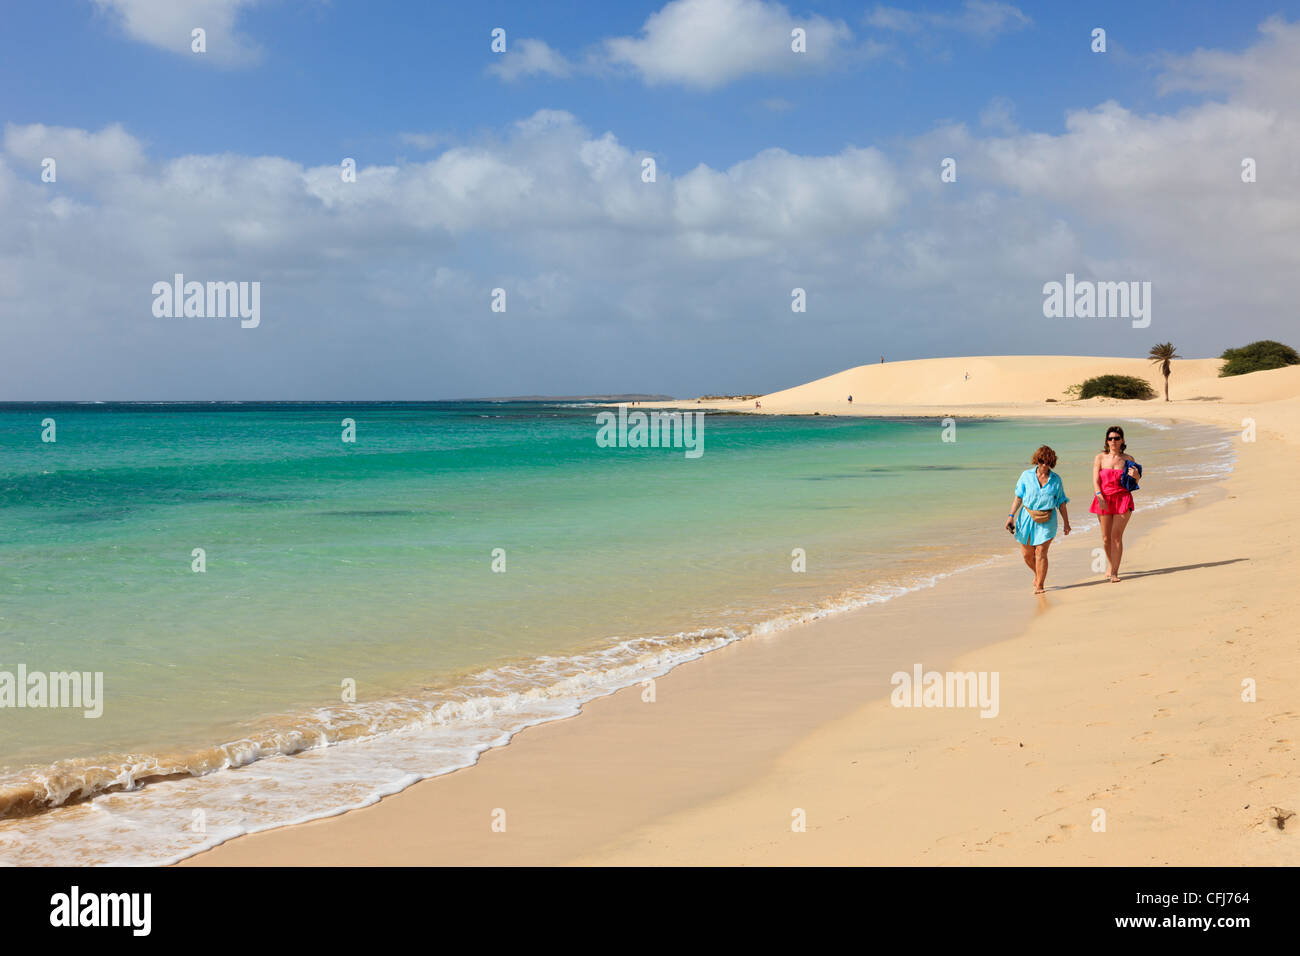 Praia de Chaves, Boa Vista, Kap Verde Inseln. Zwei Frauen zu Fuß entlang der Küste von ruhigen weißen Sandstrand am türkisfarbenen Meer Stockfoto